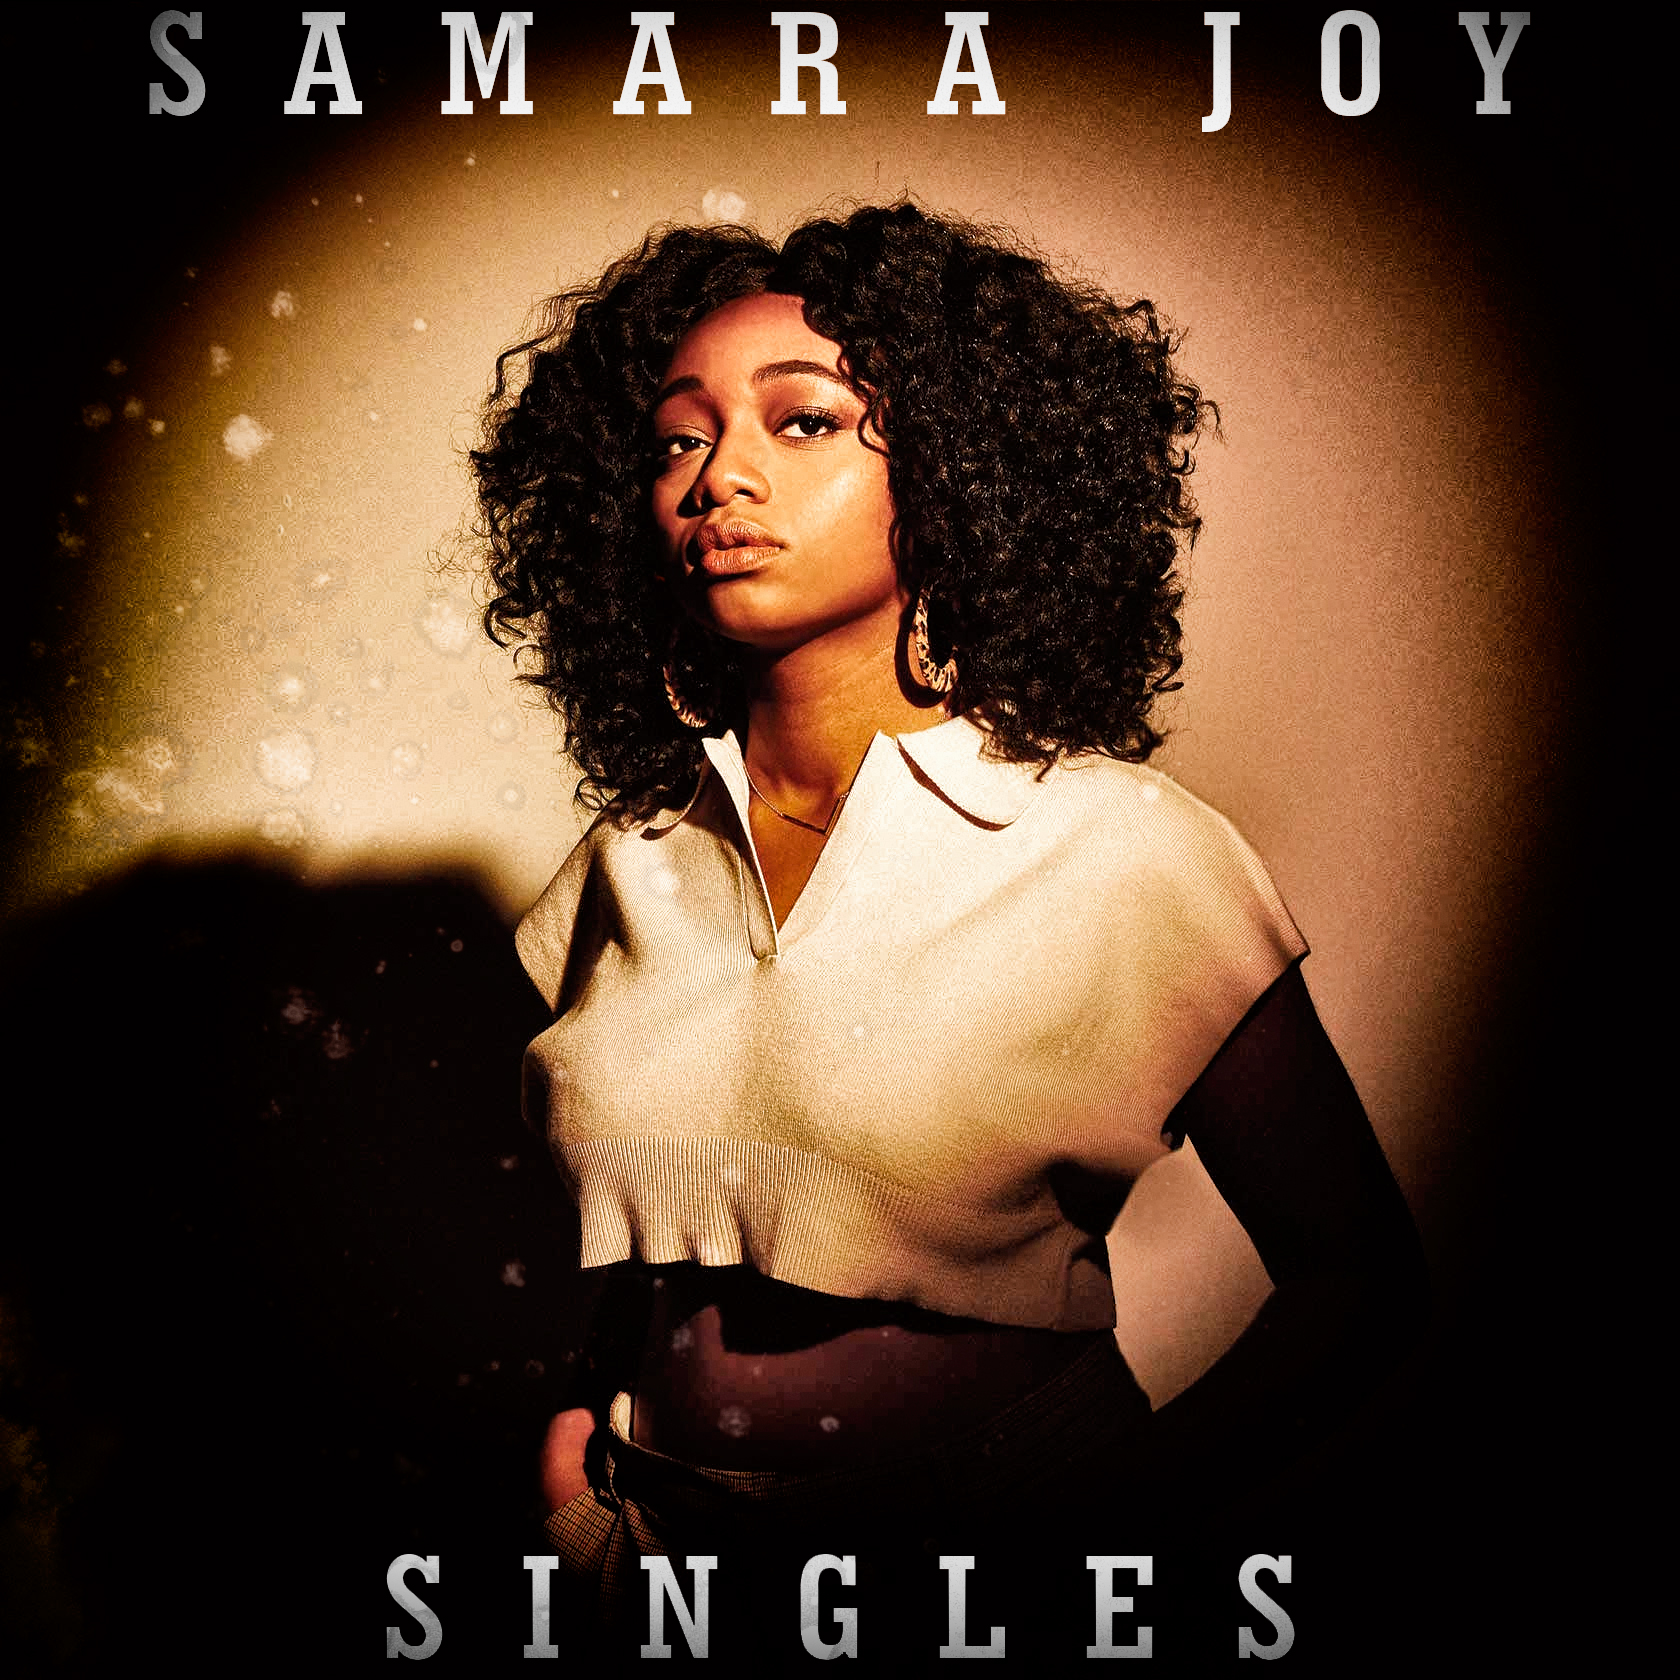 Samara Joy (3CD)